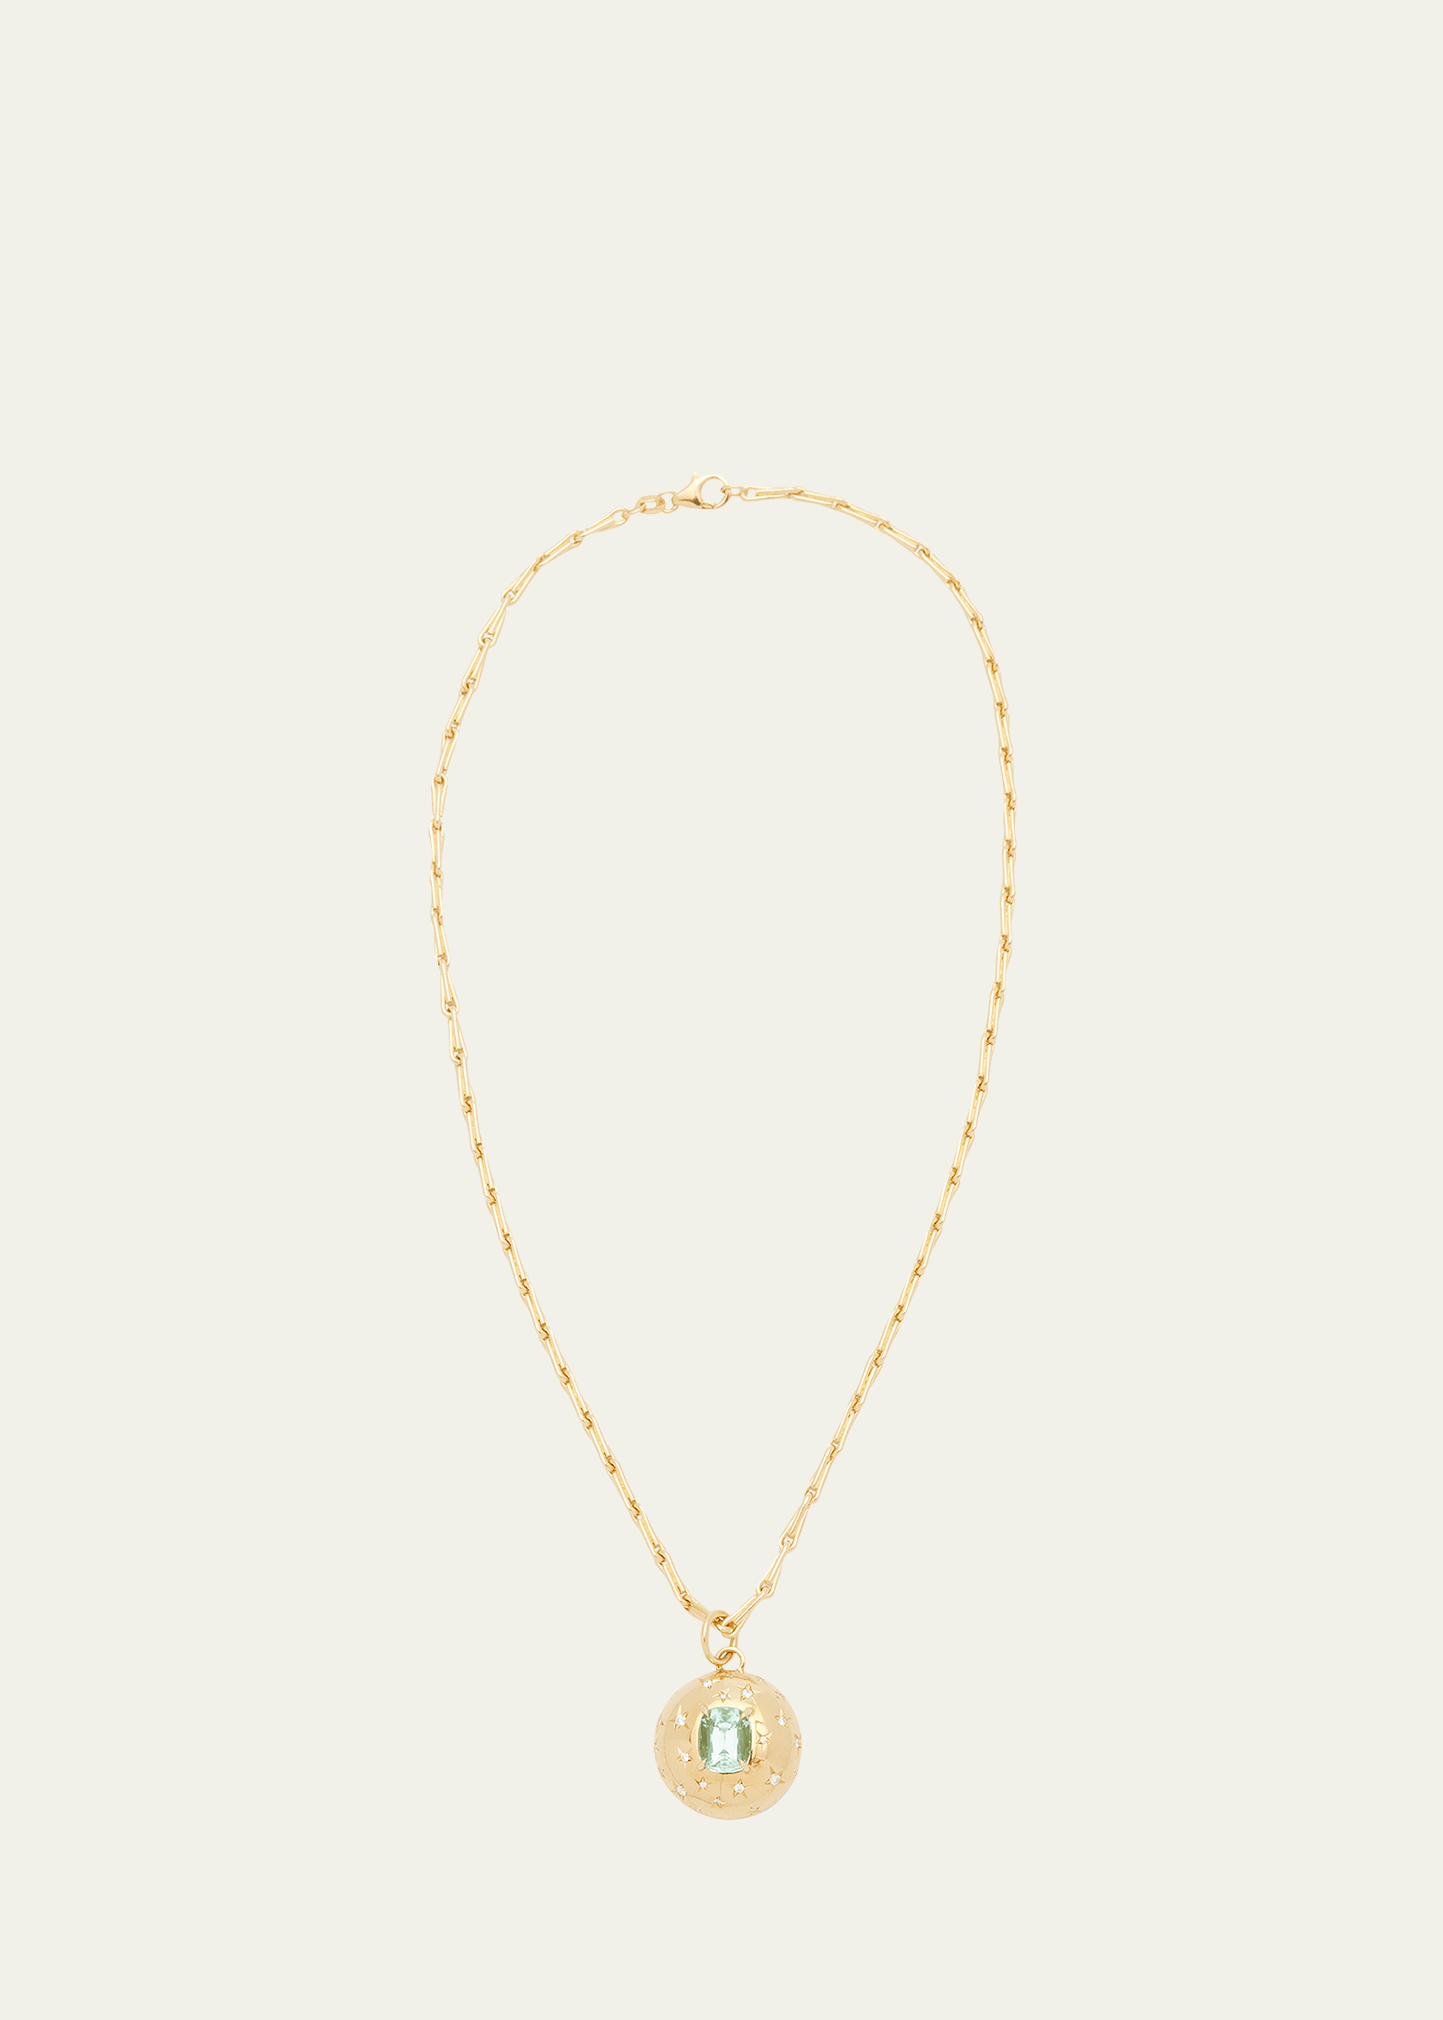 Jemma Wynne Ada 18K Yellow Gold OAK Chain Pendant Necklace